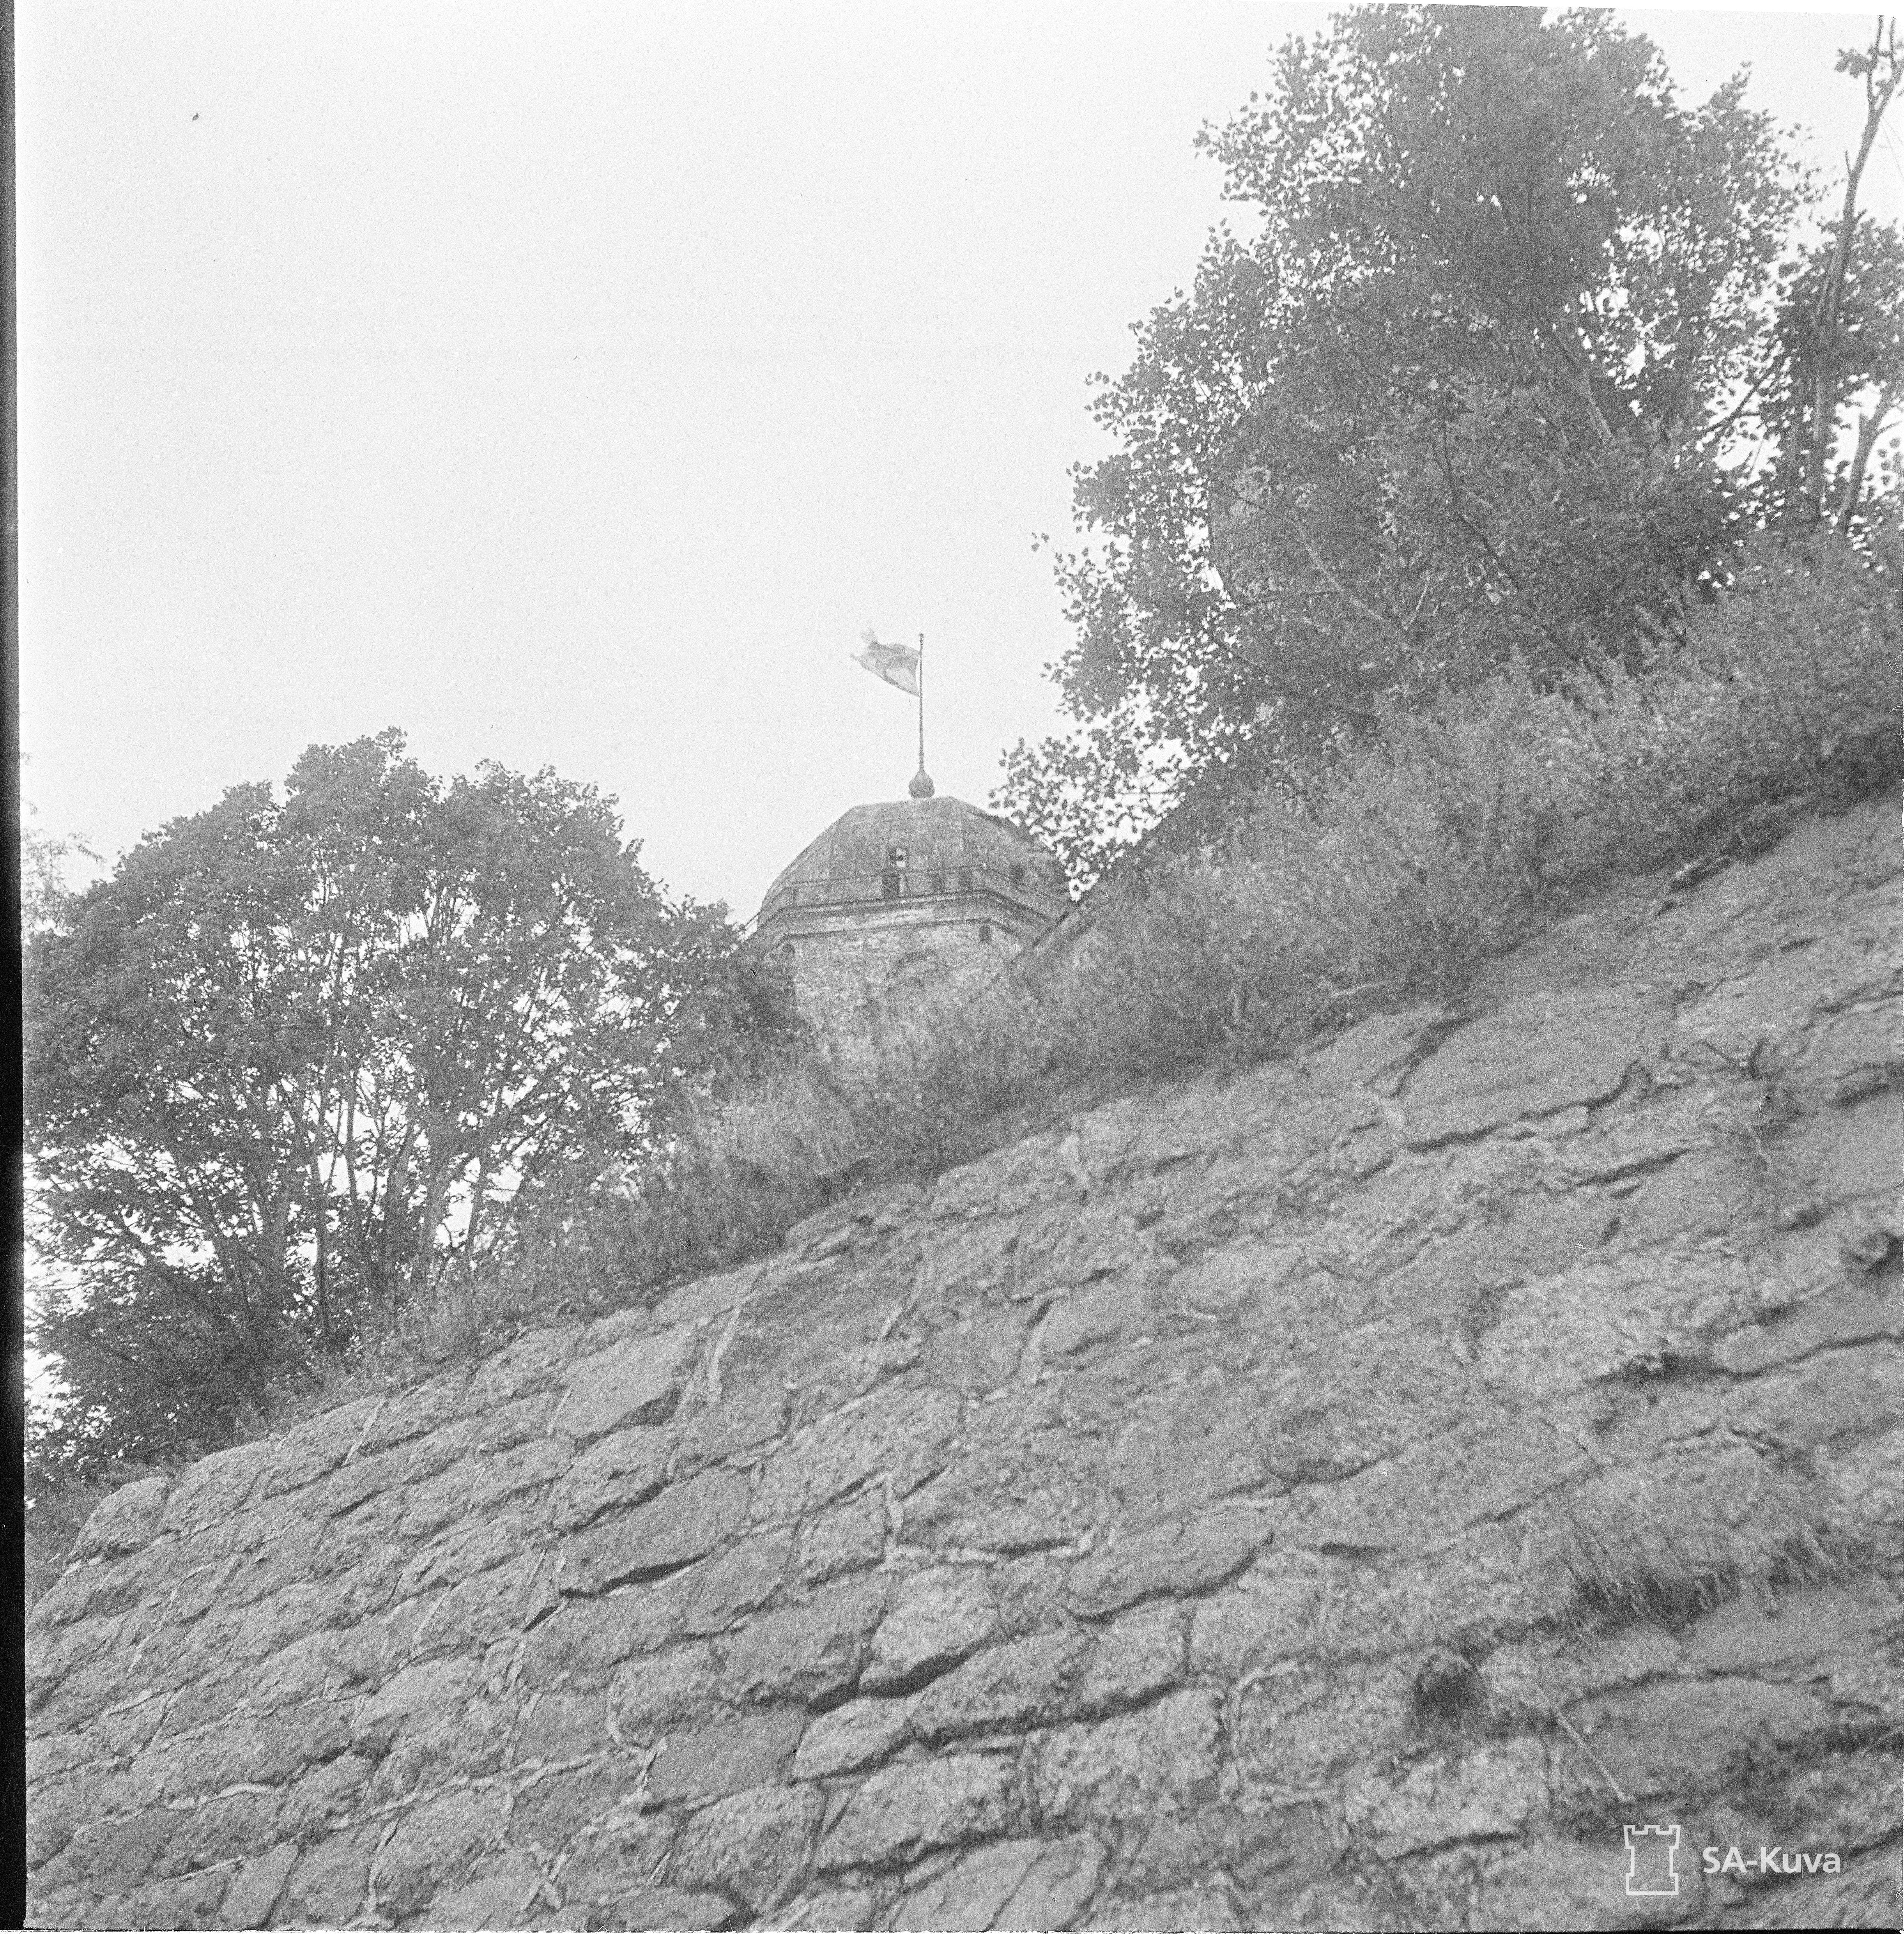 Viipur Castle.